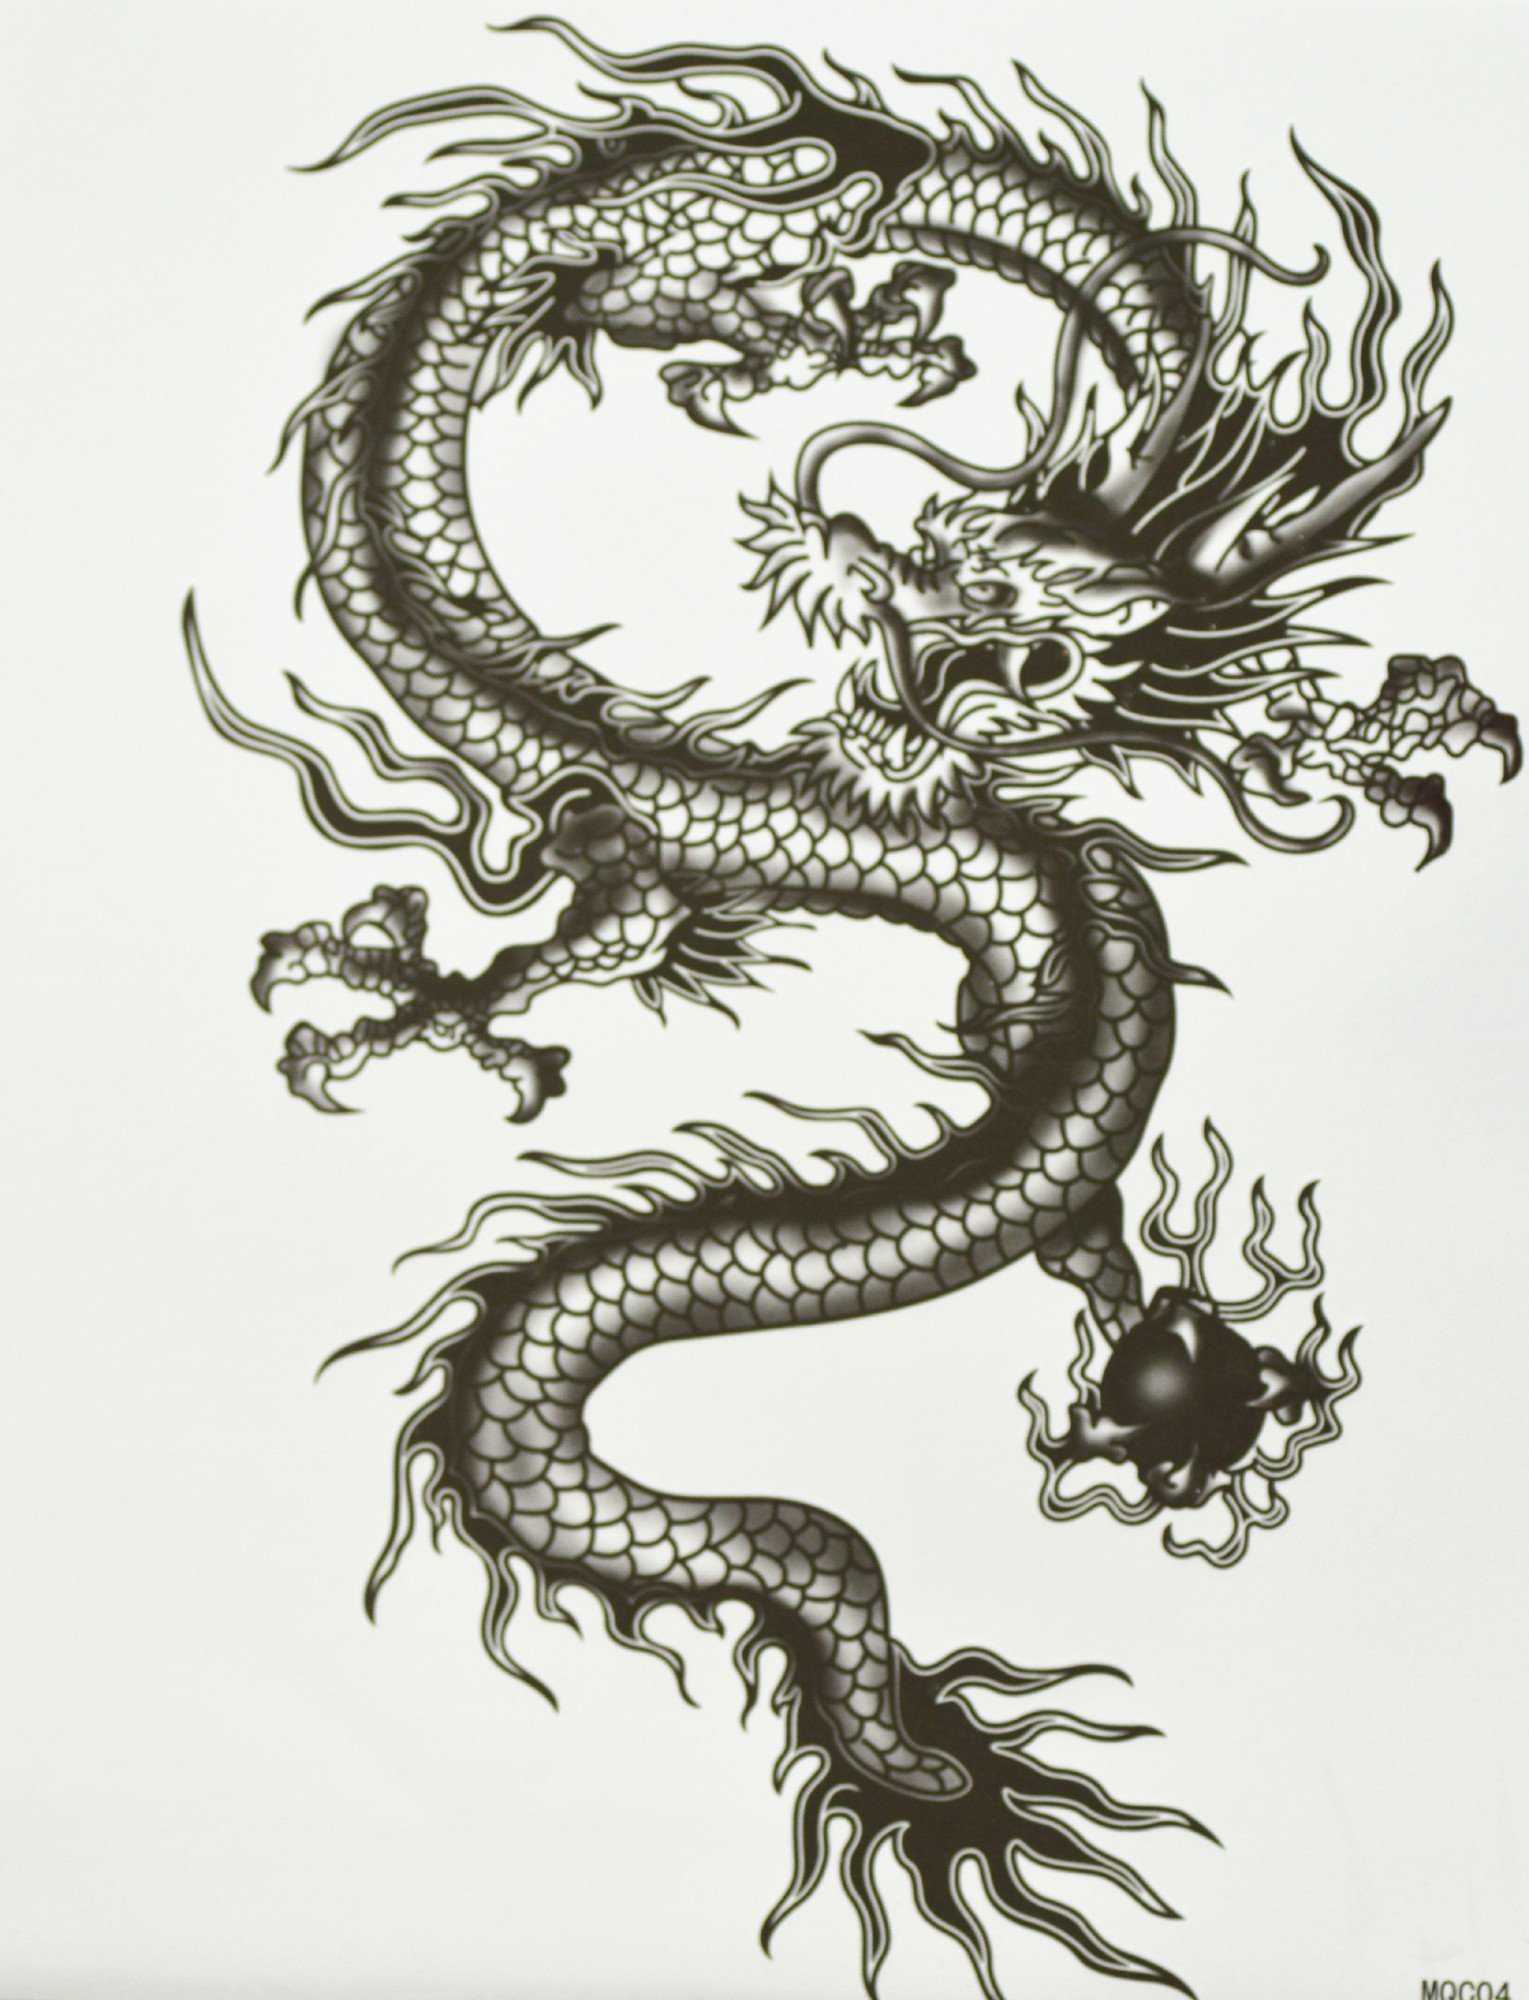 Тату дракона символизирует силу, власть, смелость и решительность Такие рисунки выбирают в основном волевые личности, которые знают свои способности